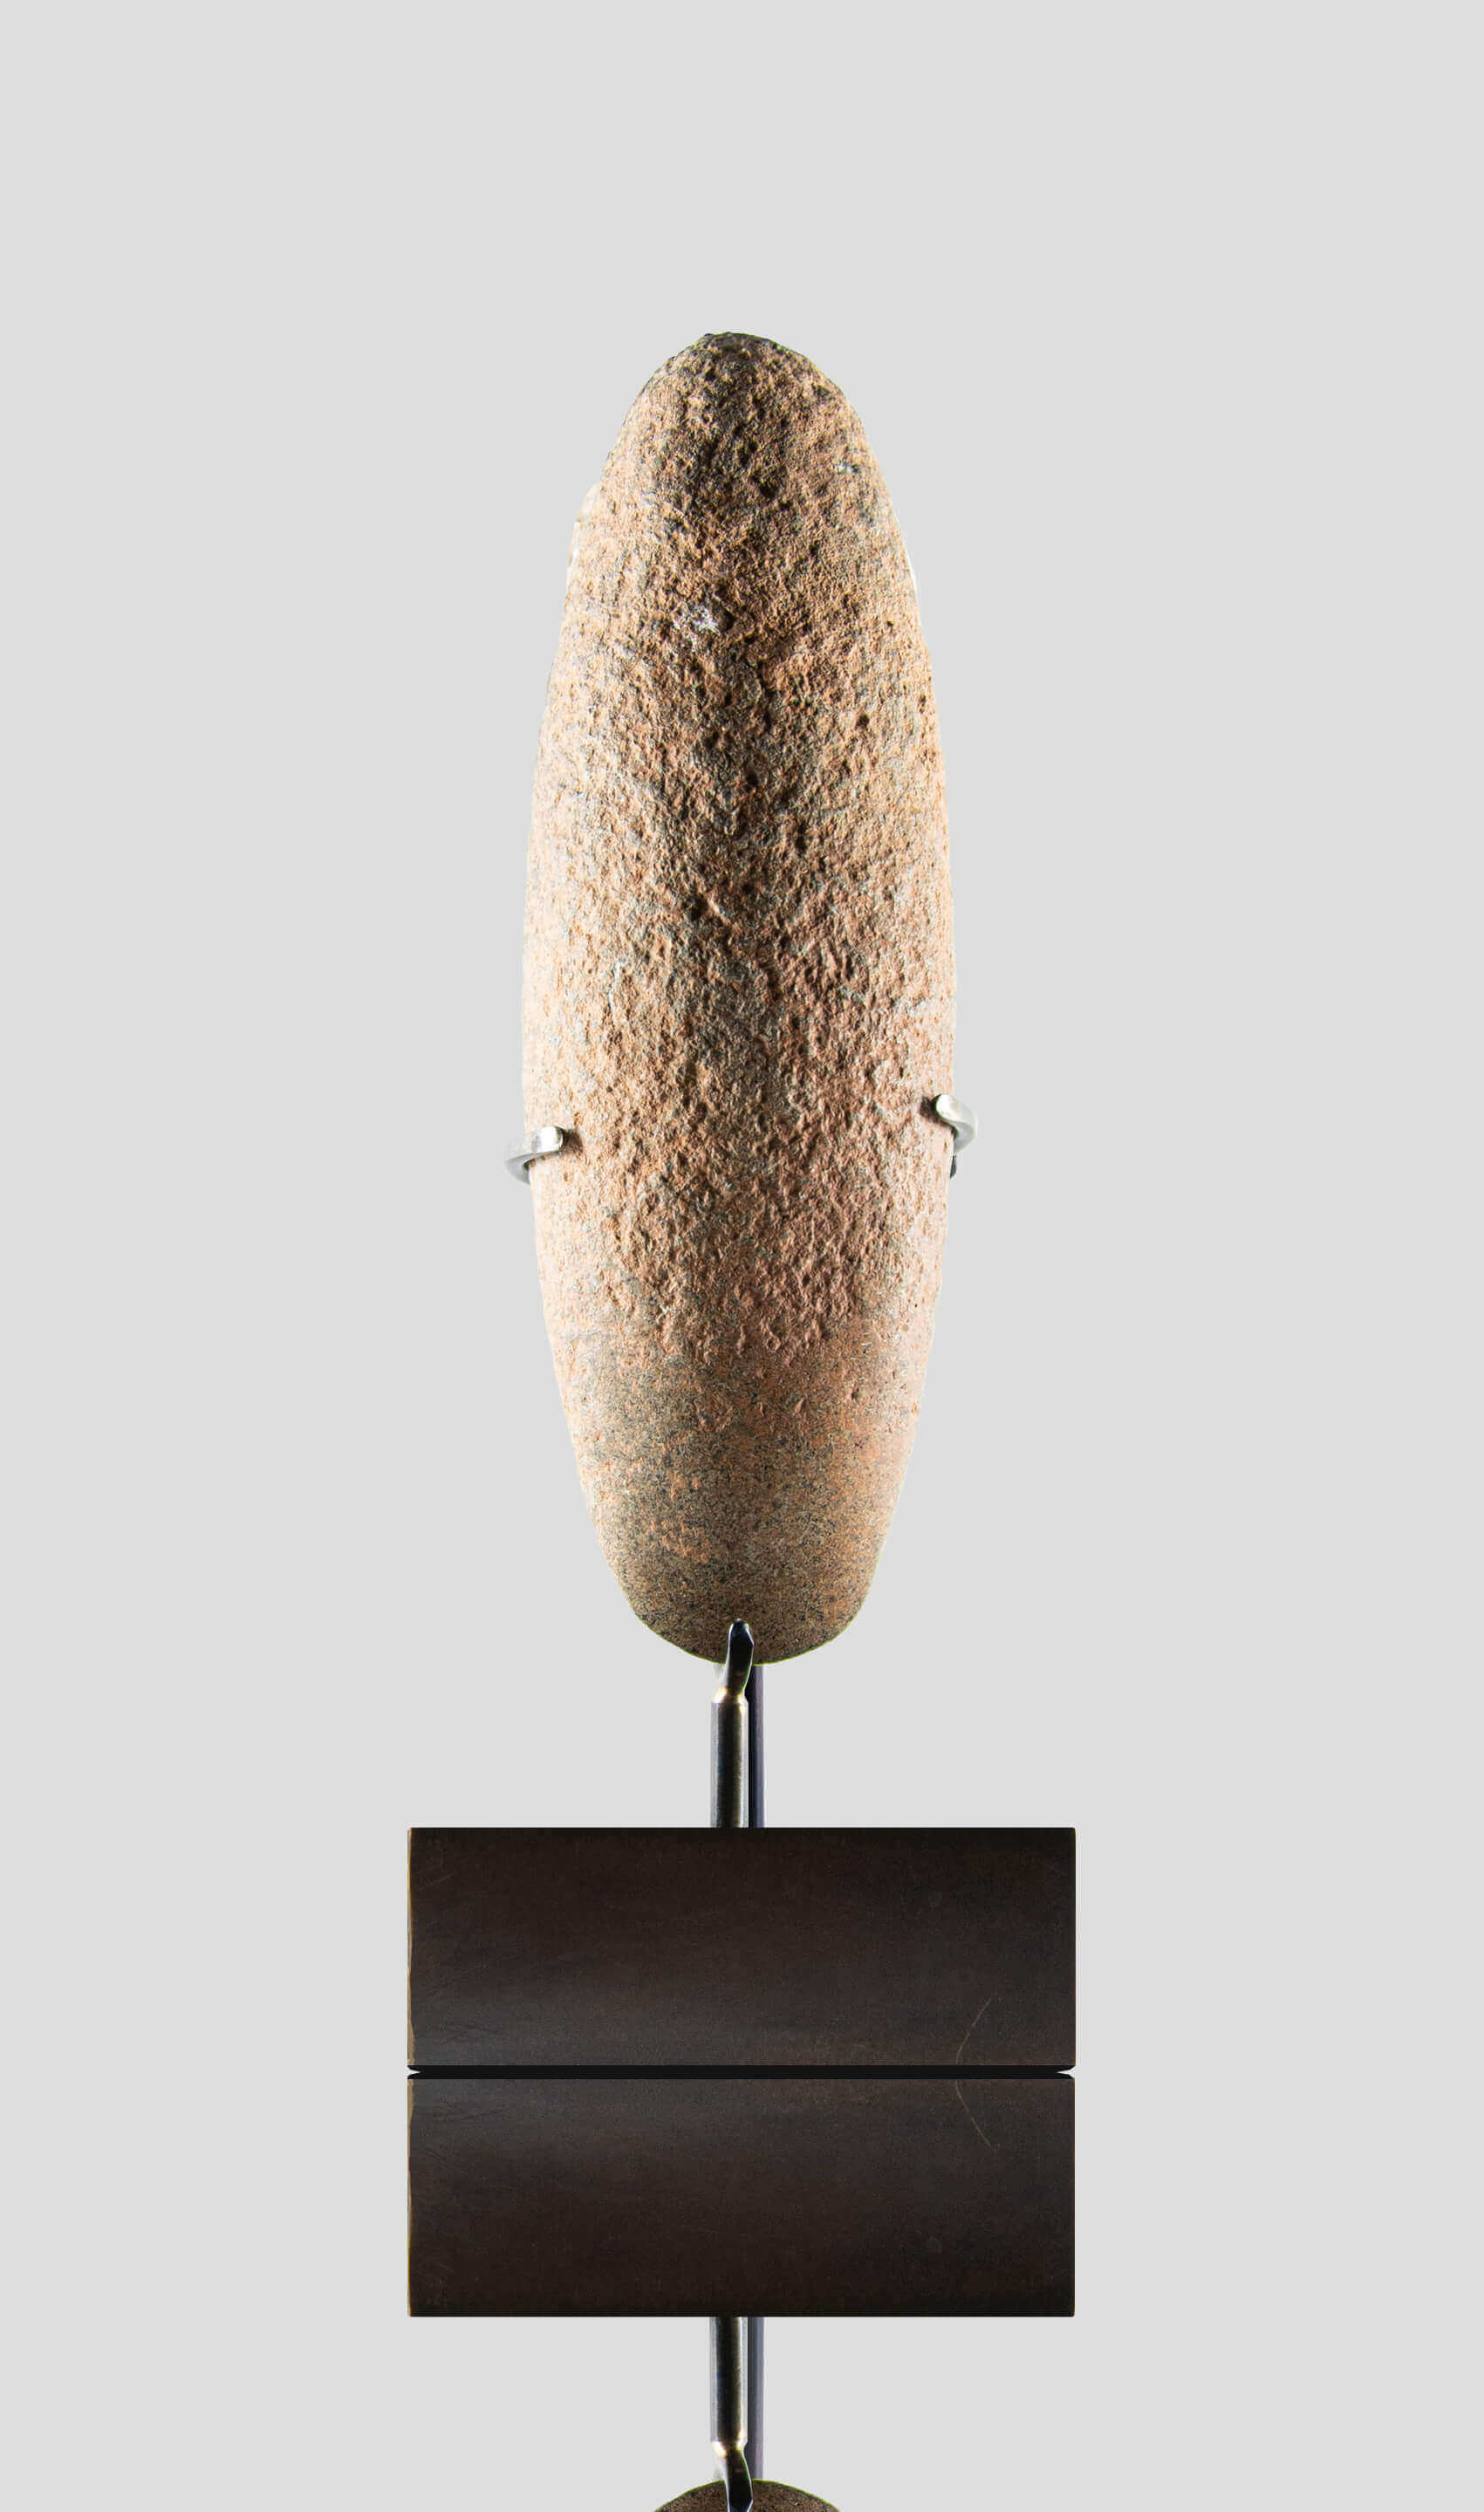 人工制品新石器时代卡普西亚手斧 [8,500 BC] 220mm